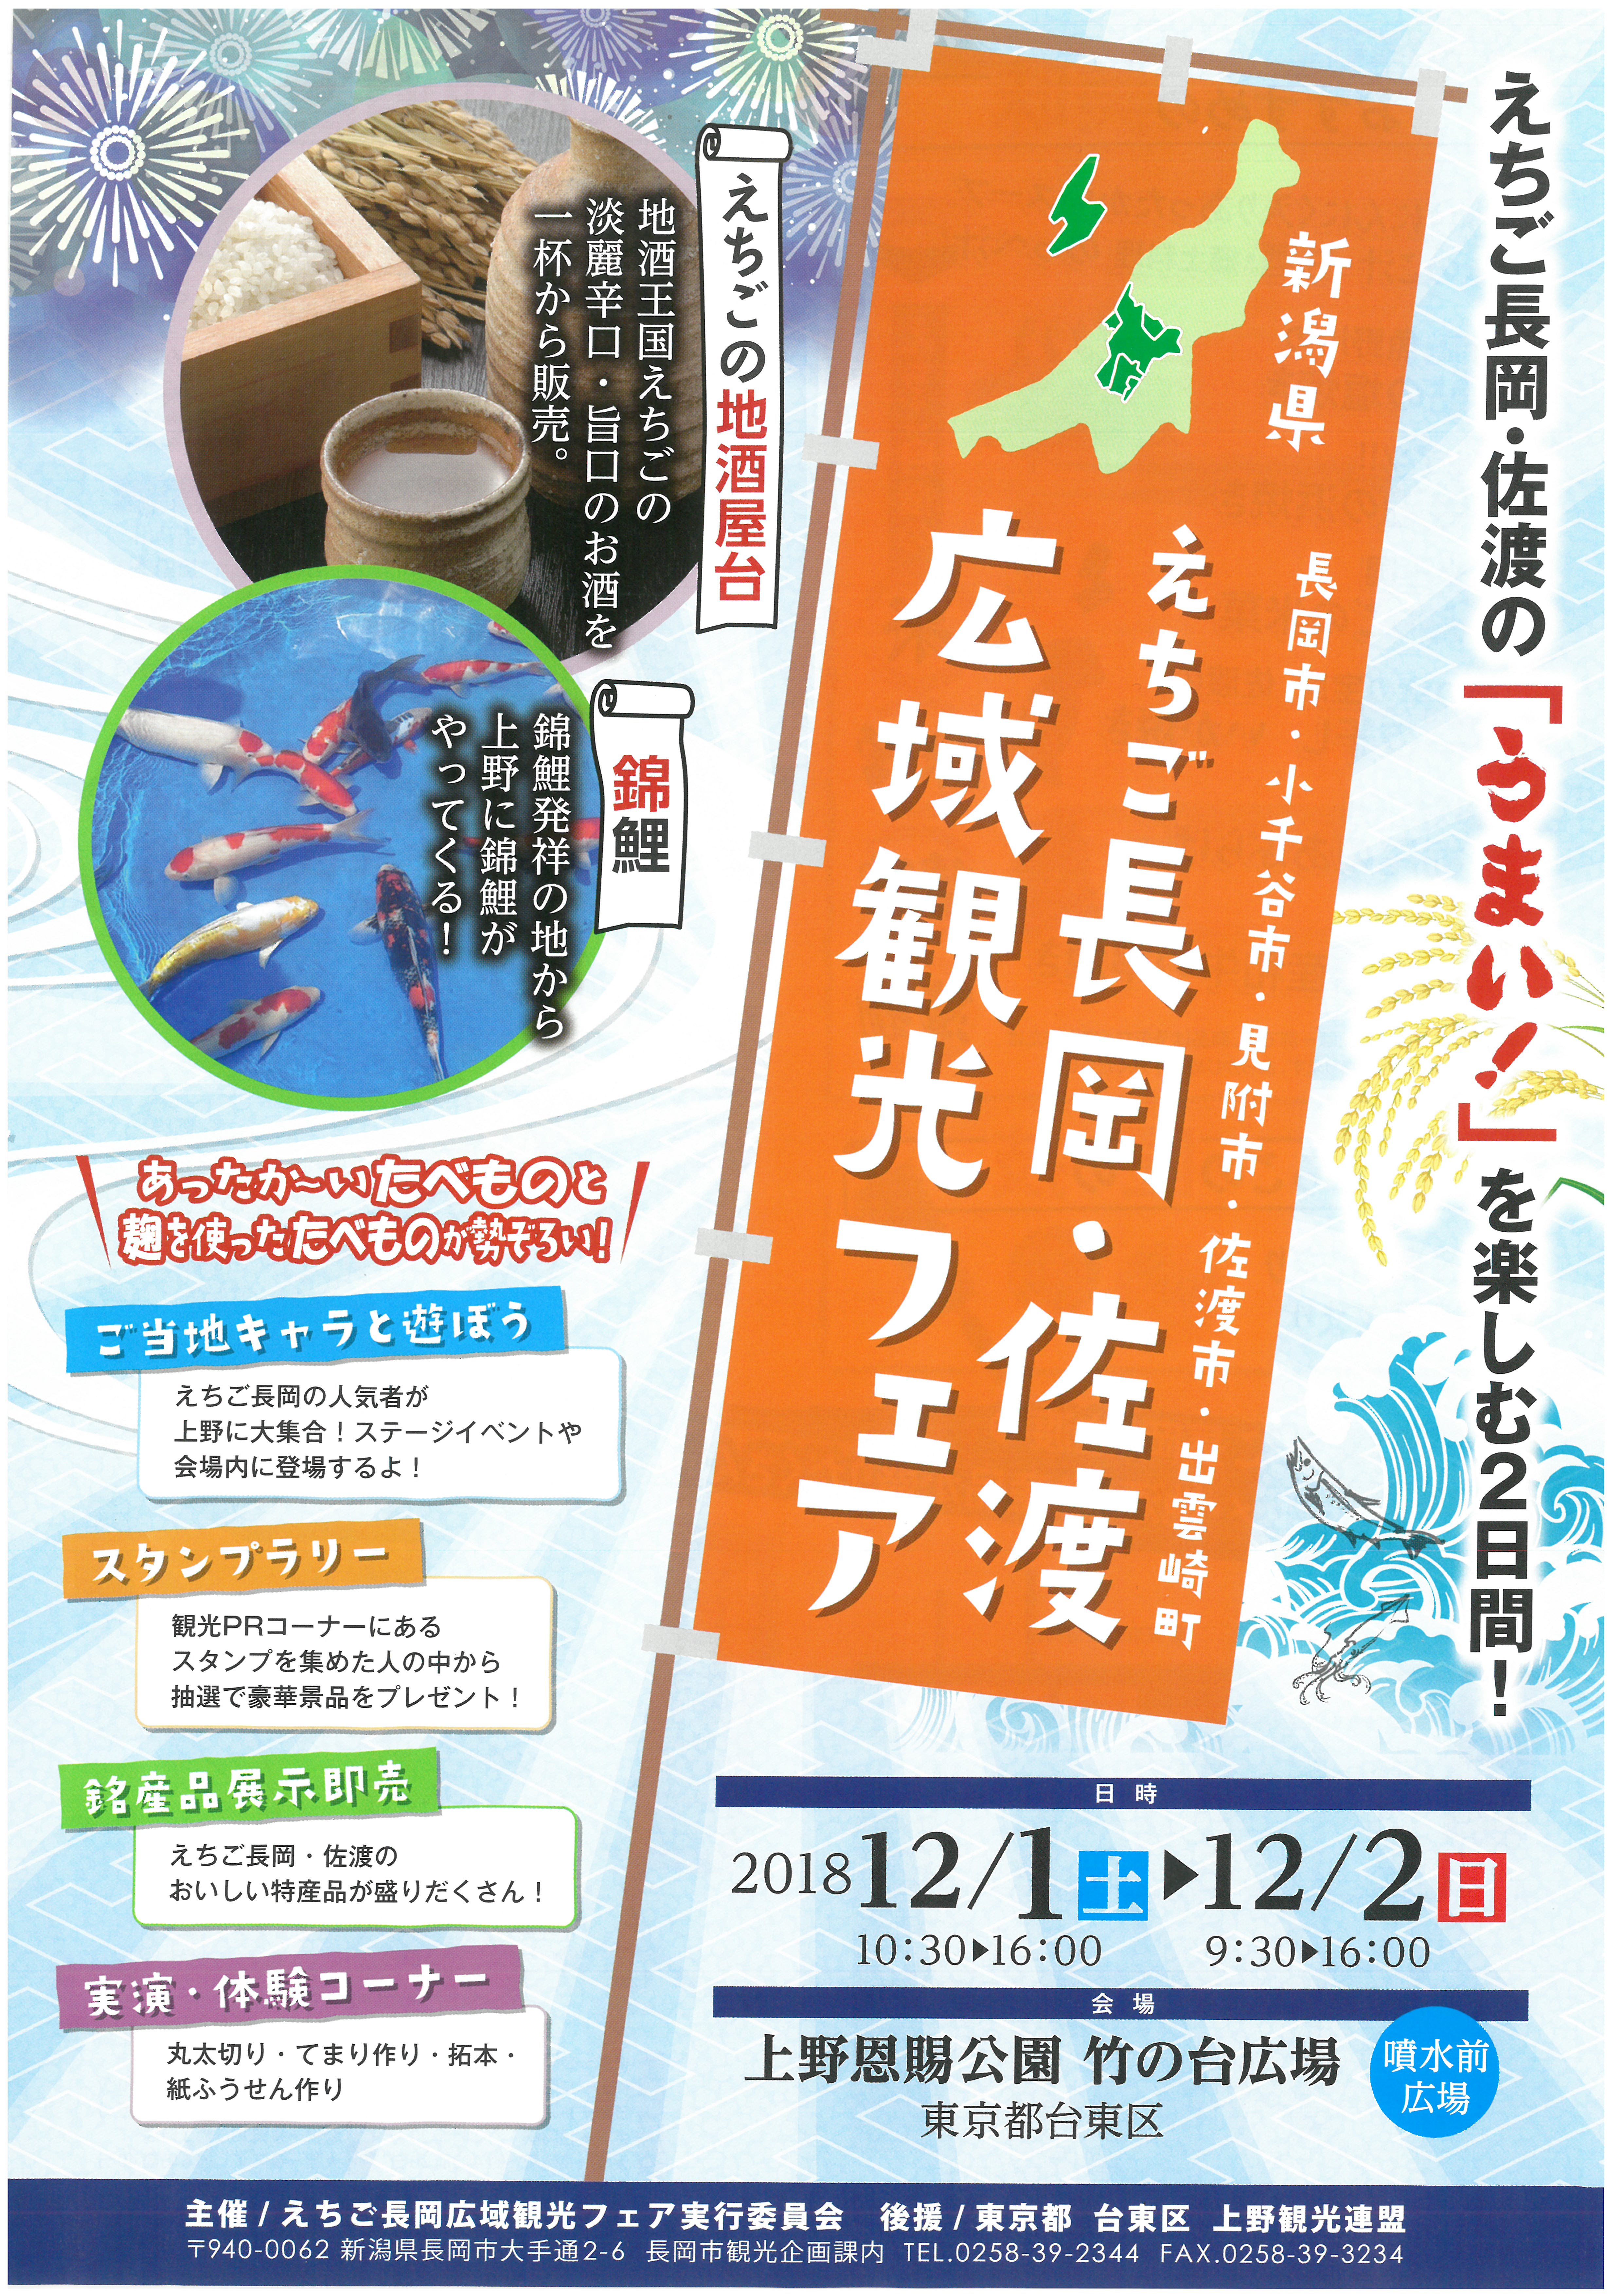 【12月1、2日】えちご長岡・佐渡広域観光フェアが開催されます！ 